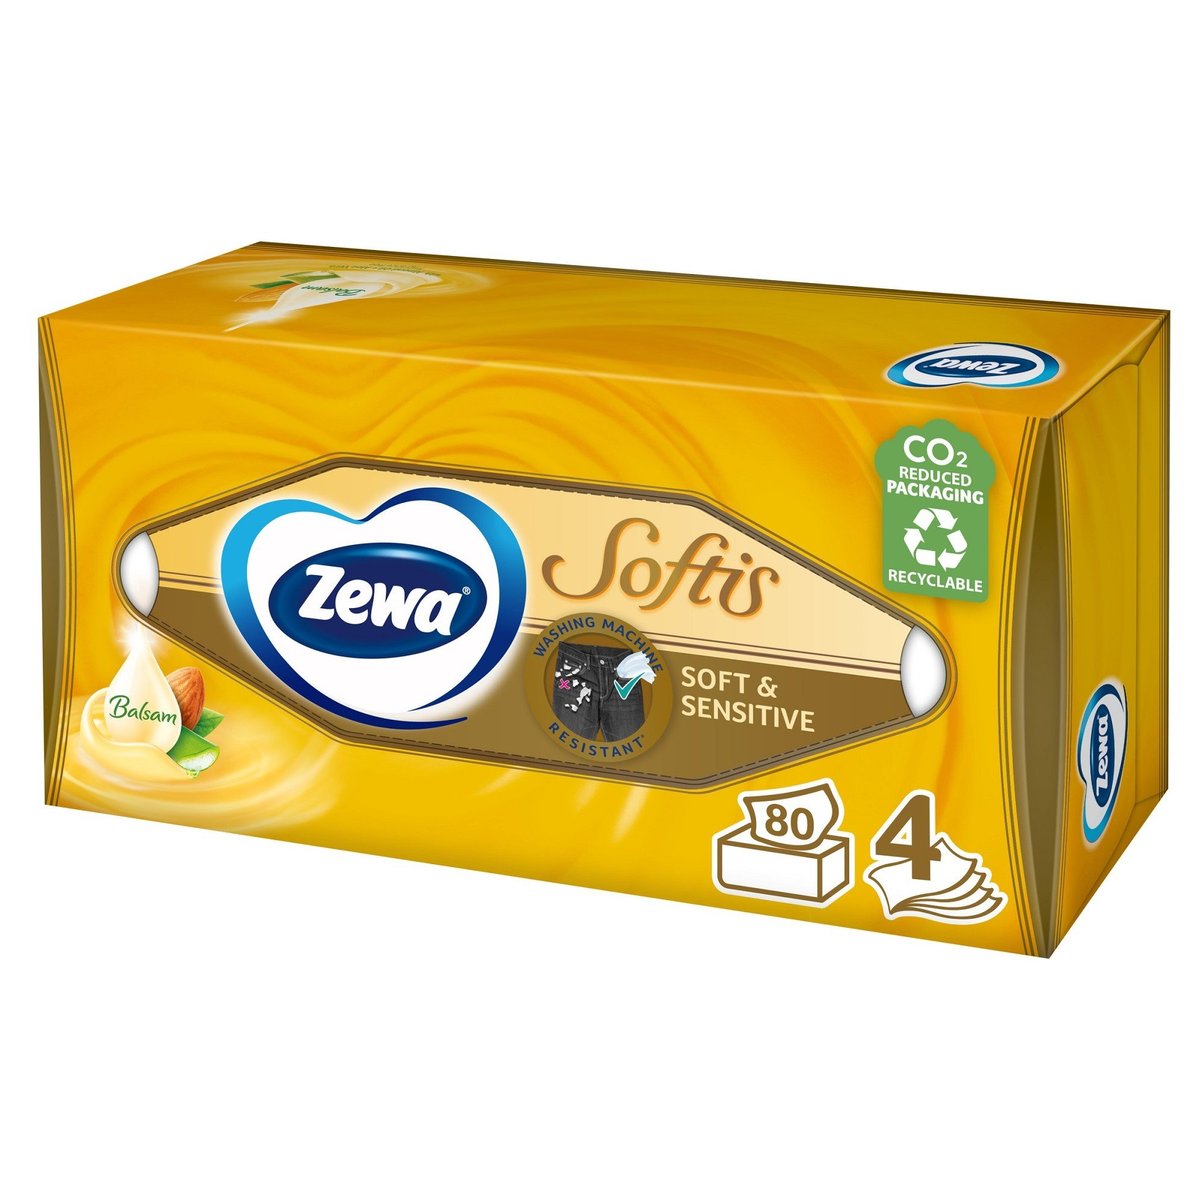 Zewa Softis Soft & Sensitive papírové kapesníky 4vrstvé box